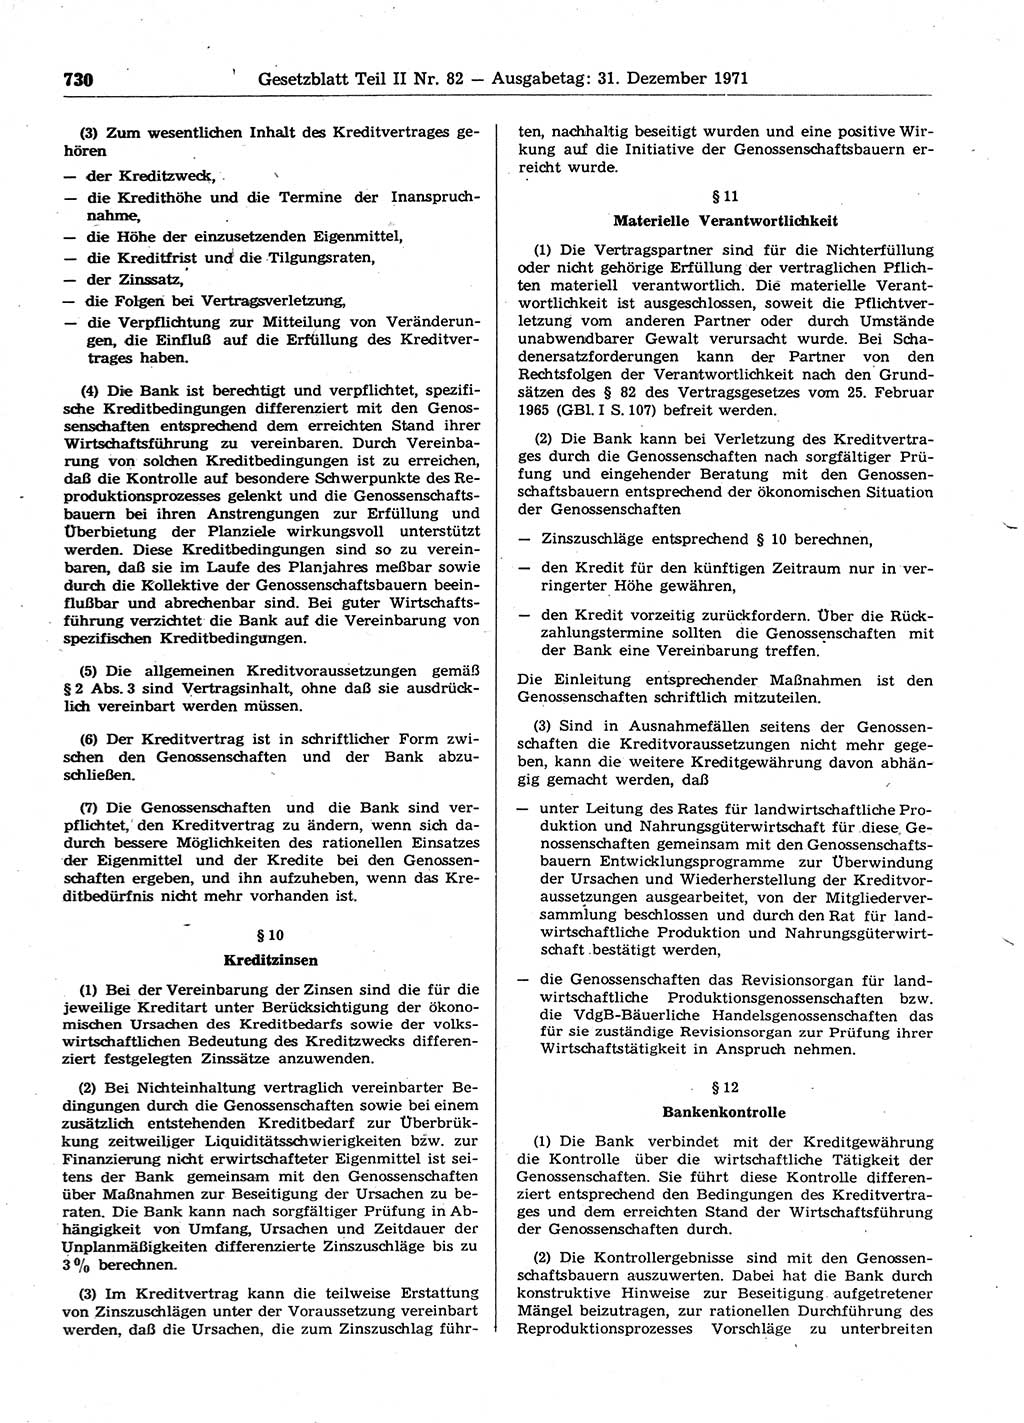 Gesetzblatt (GBl.) der Deutschen Demokratischen Republik (DDR) Teil ⅠⅠ 1971, Seite 730 (GBl. DDR ⅠⅠ 1971, S. 730)